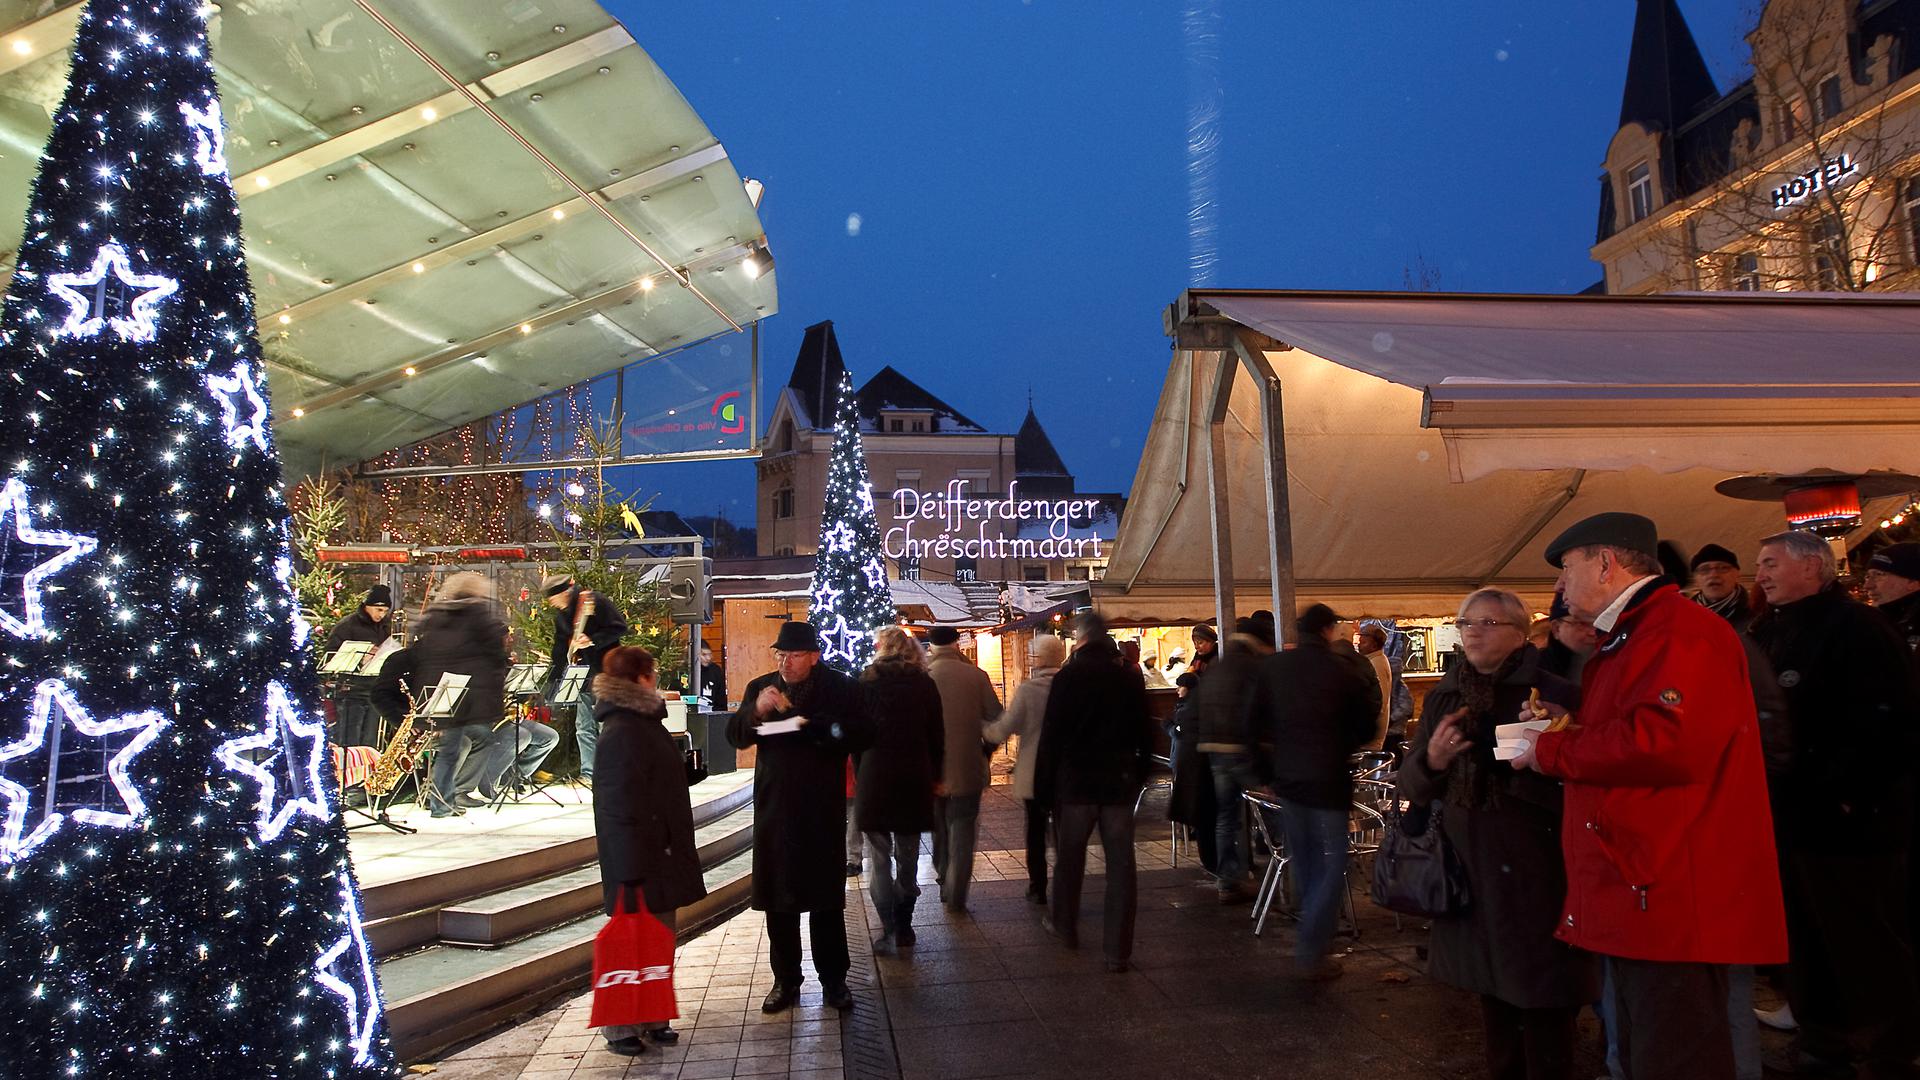 Noël à Differdange : le marché de Noël est ouvert jusqu'au 22 décembre inclus. 